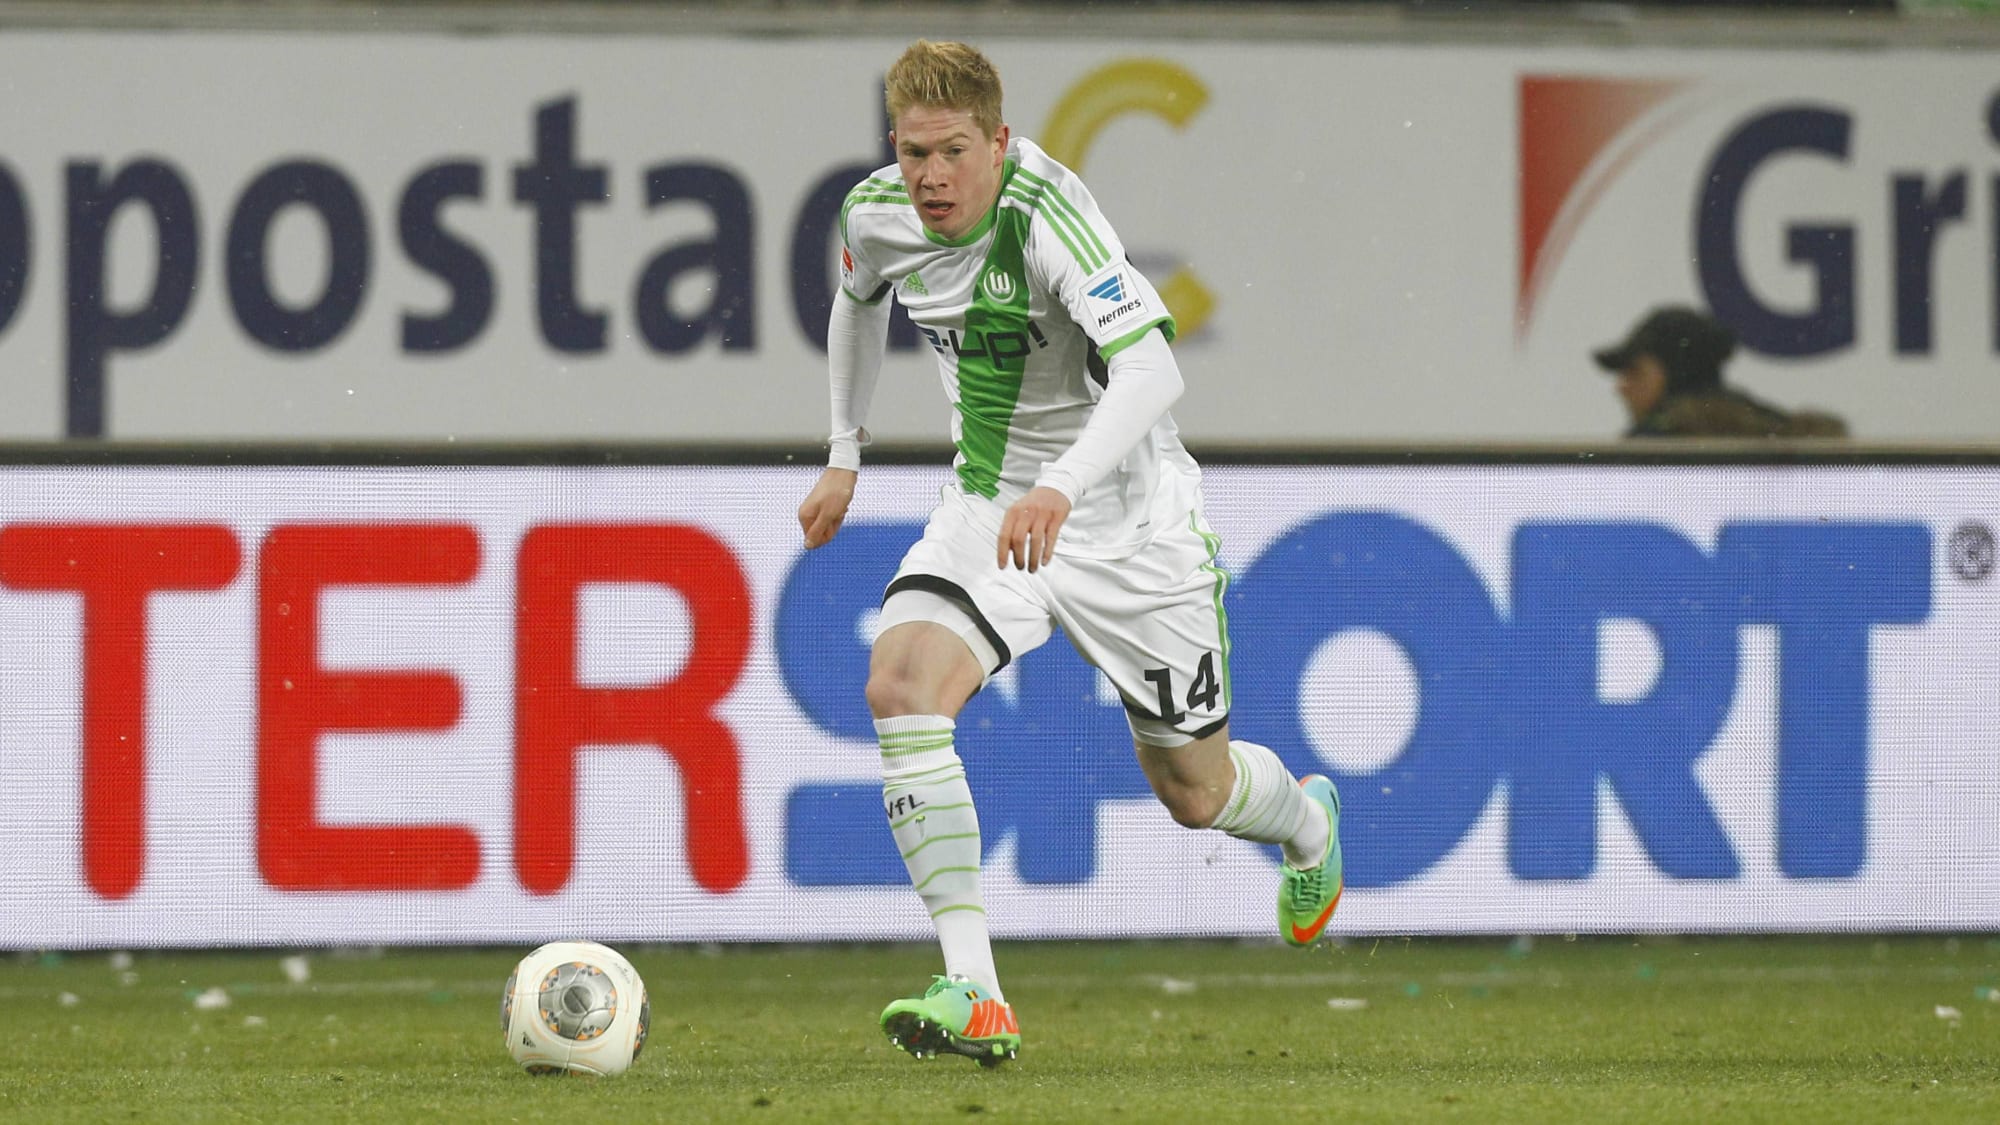 wechselte im Januar 2014 vom FC Chelsea zum VfL Wolfsburg.